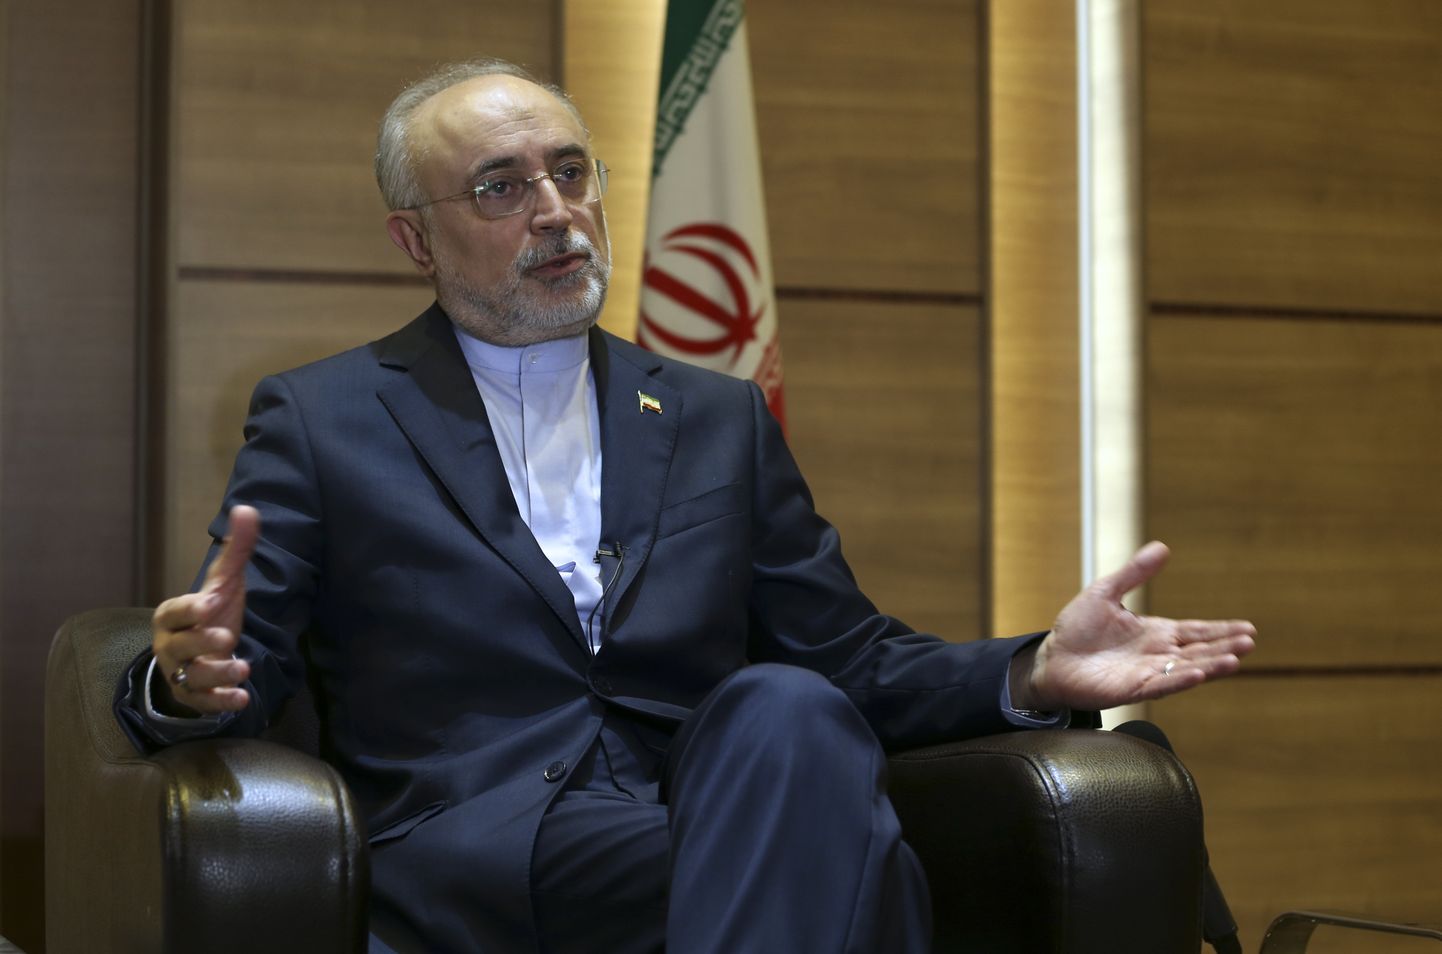 Iraani tuumaenergiaagentuuri juht Ali Akbar Salehi.